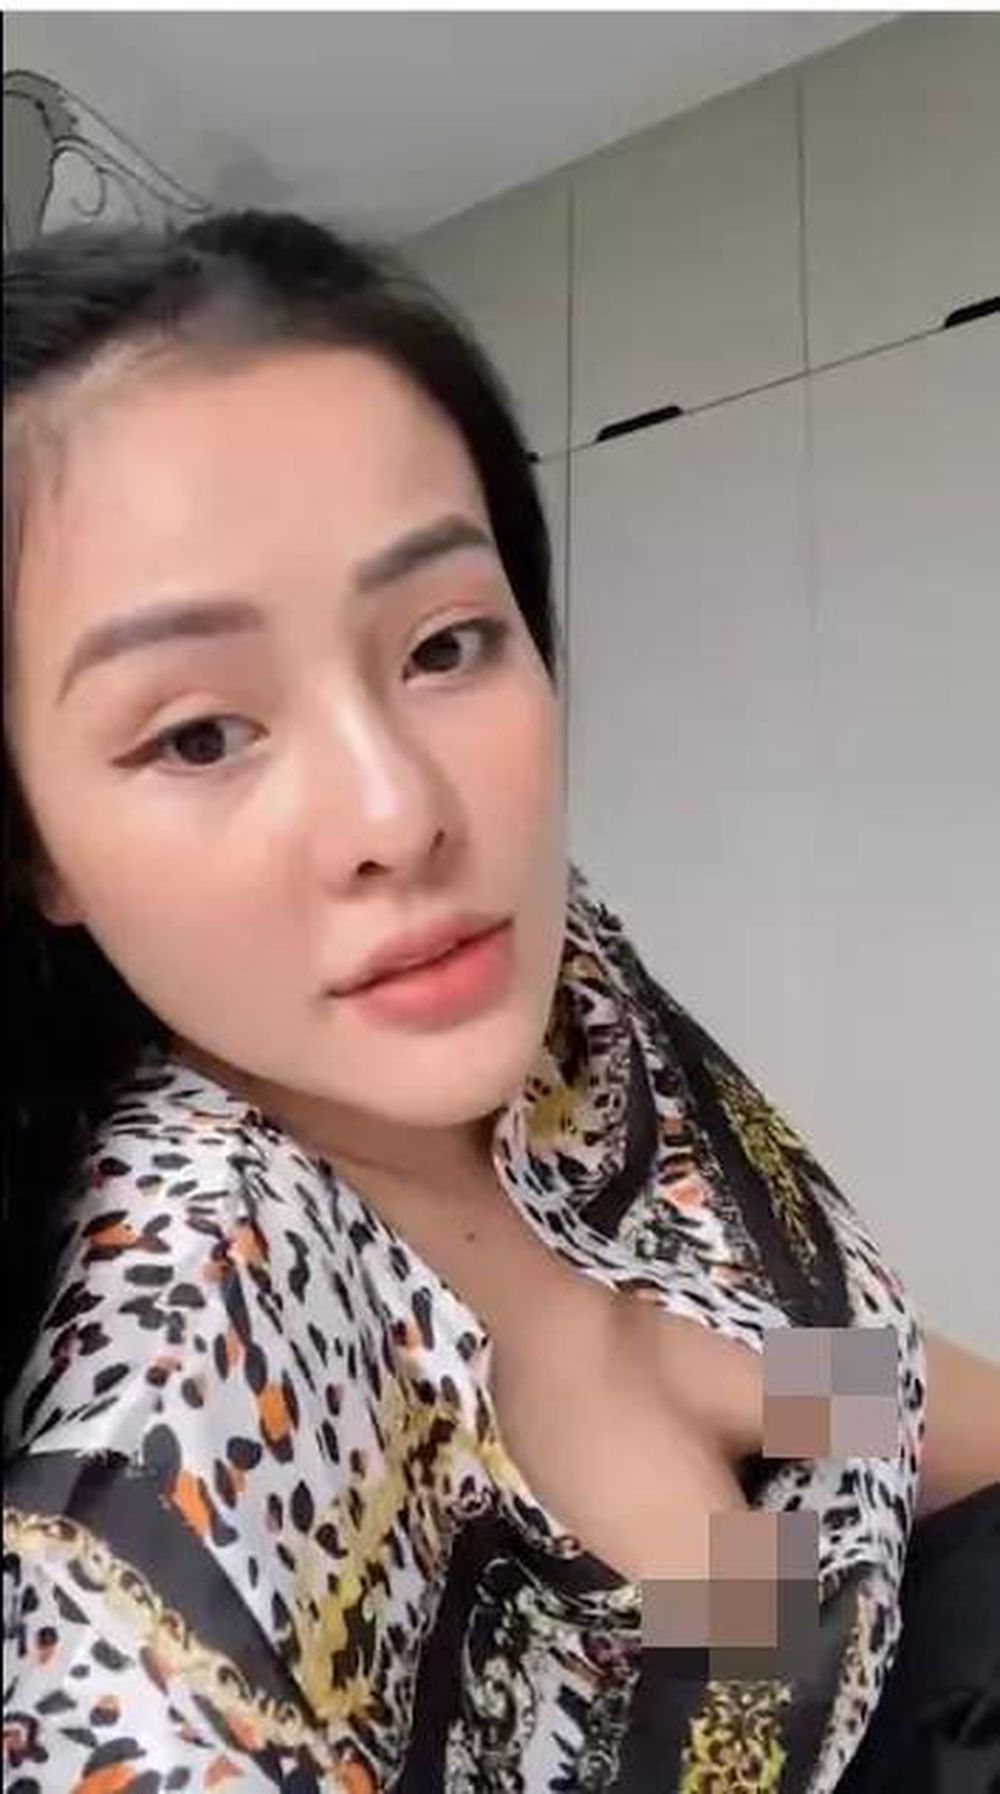 Muôn kiểu thị phi của bạn gái Lương Bằng Quang - Ngân 98: Hết scandal lộ  ảnh 18+, nghi vấn tạm giữ đến ăn mặc phản cảm